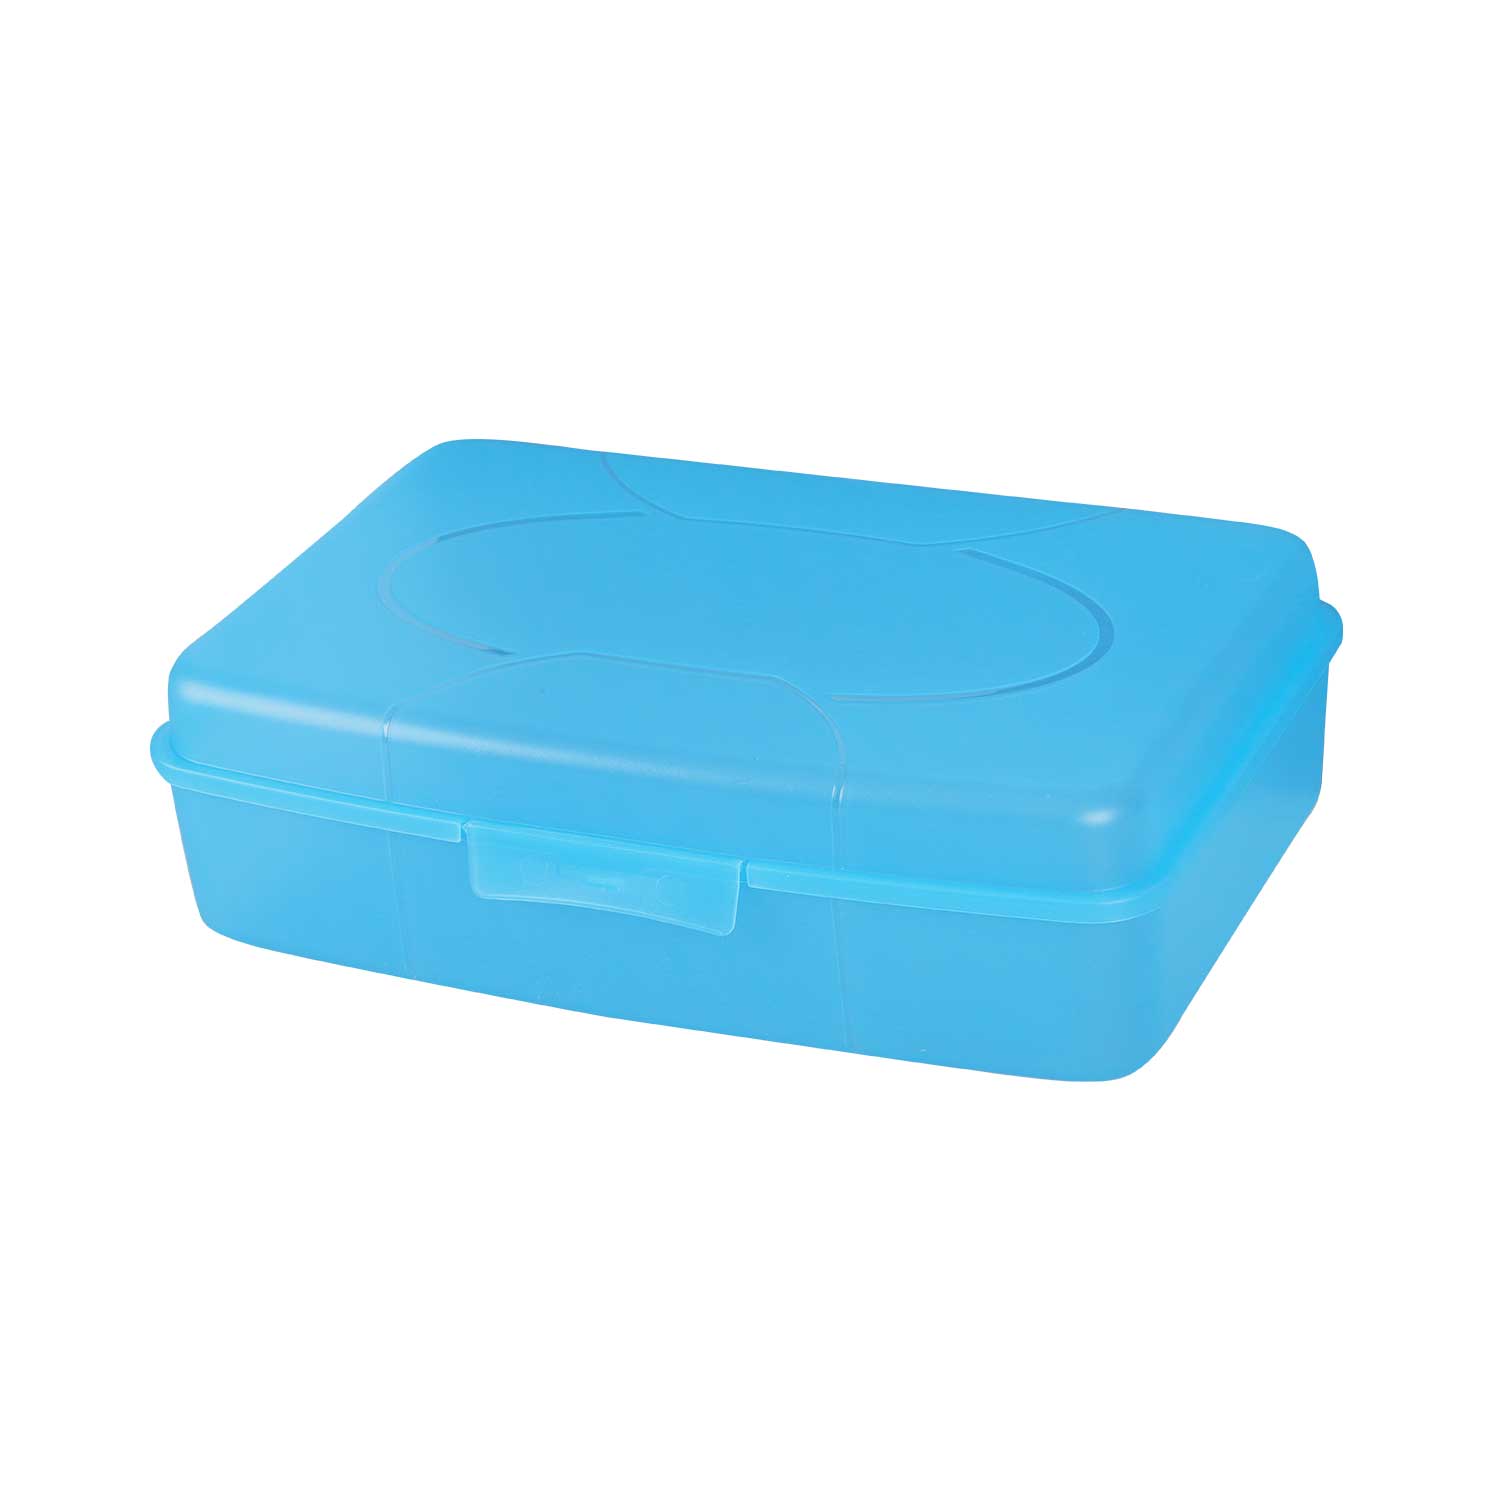 Frühstücksbox, Proviantbox Jumbo 29,5 x 19,5 x 8 cm, blau